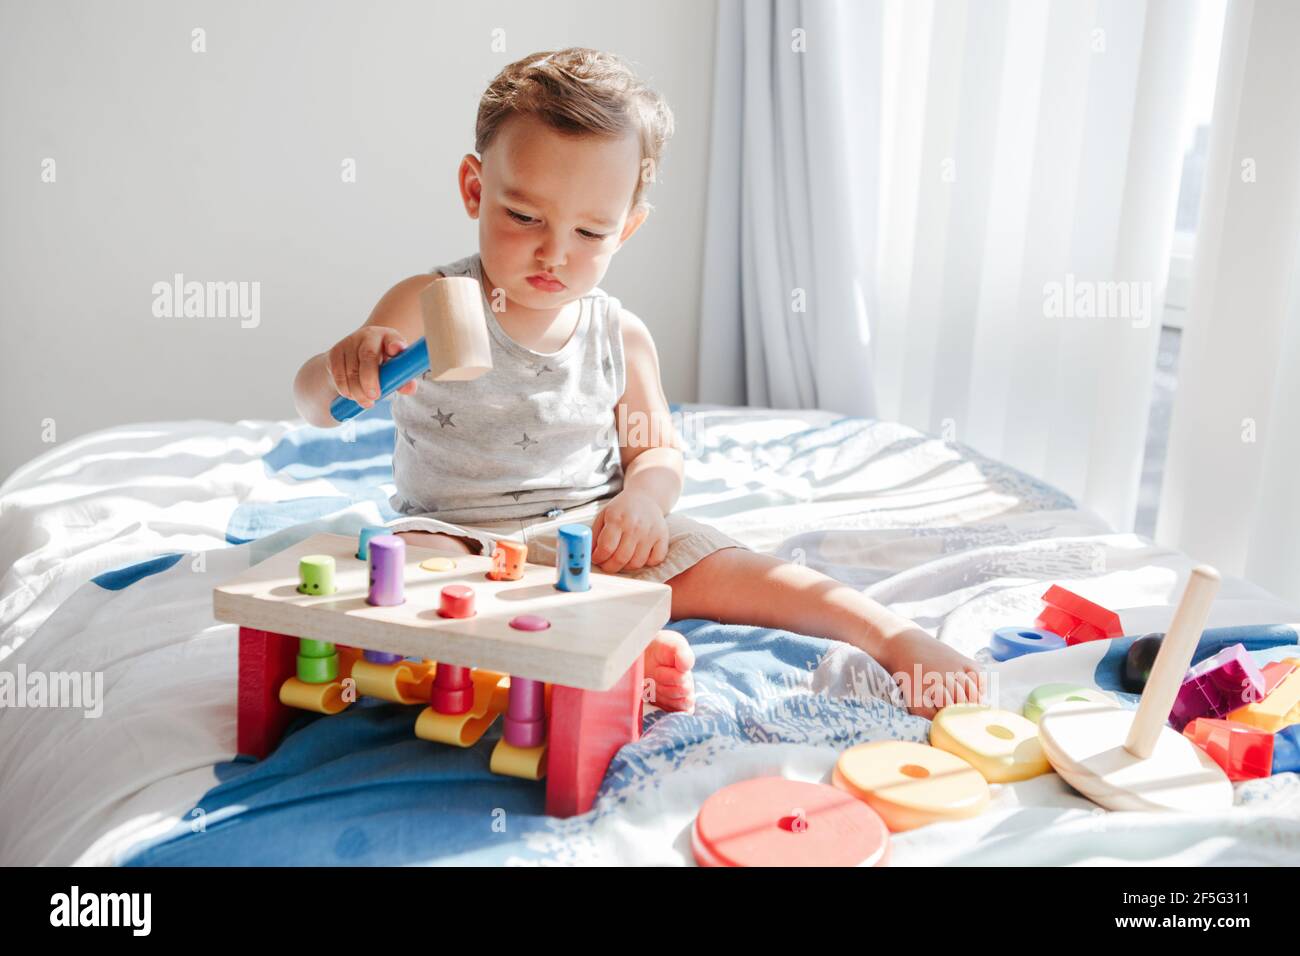 Nettes Baby Kleinkind spielen mit Lernen mehrfarbige Spielzeug Stampfbank zu Hause. Zählen Sie das Lernen. Frühes Alter Montessori Ausbildung. Kinder Hand Gehirn Spaß de Stockfoto